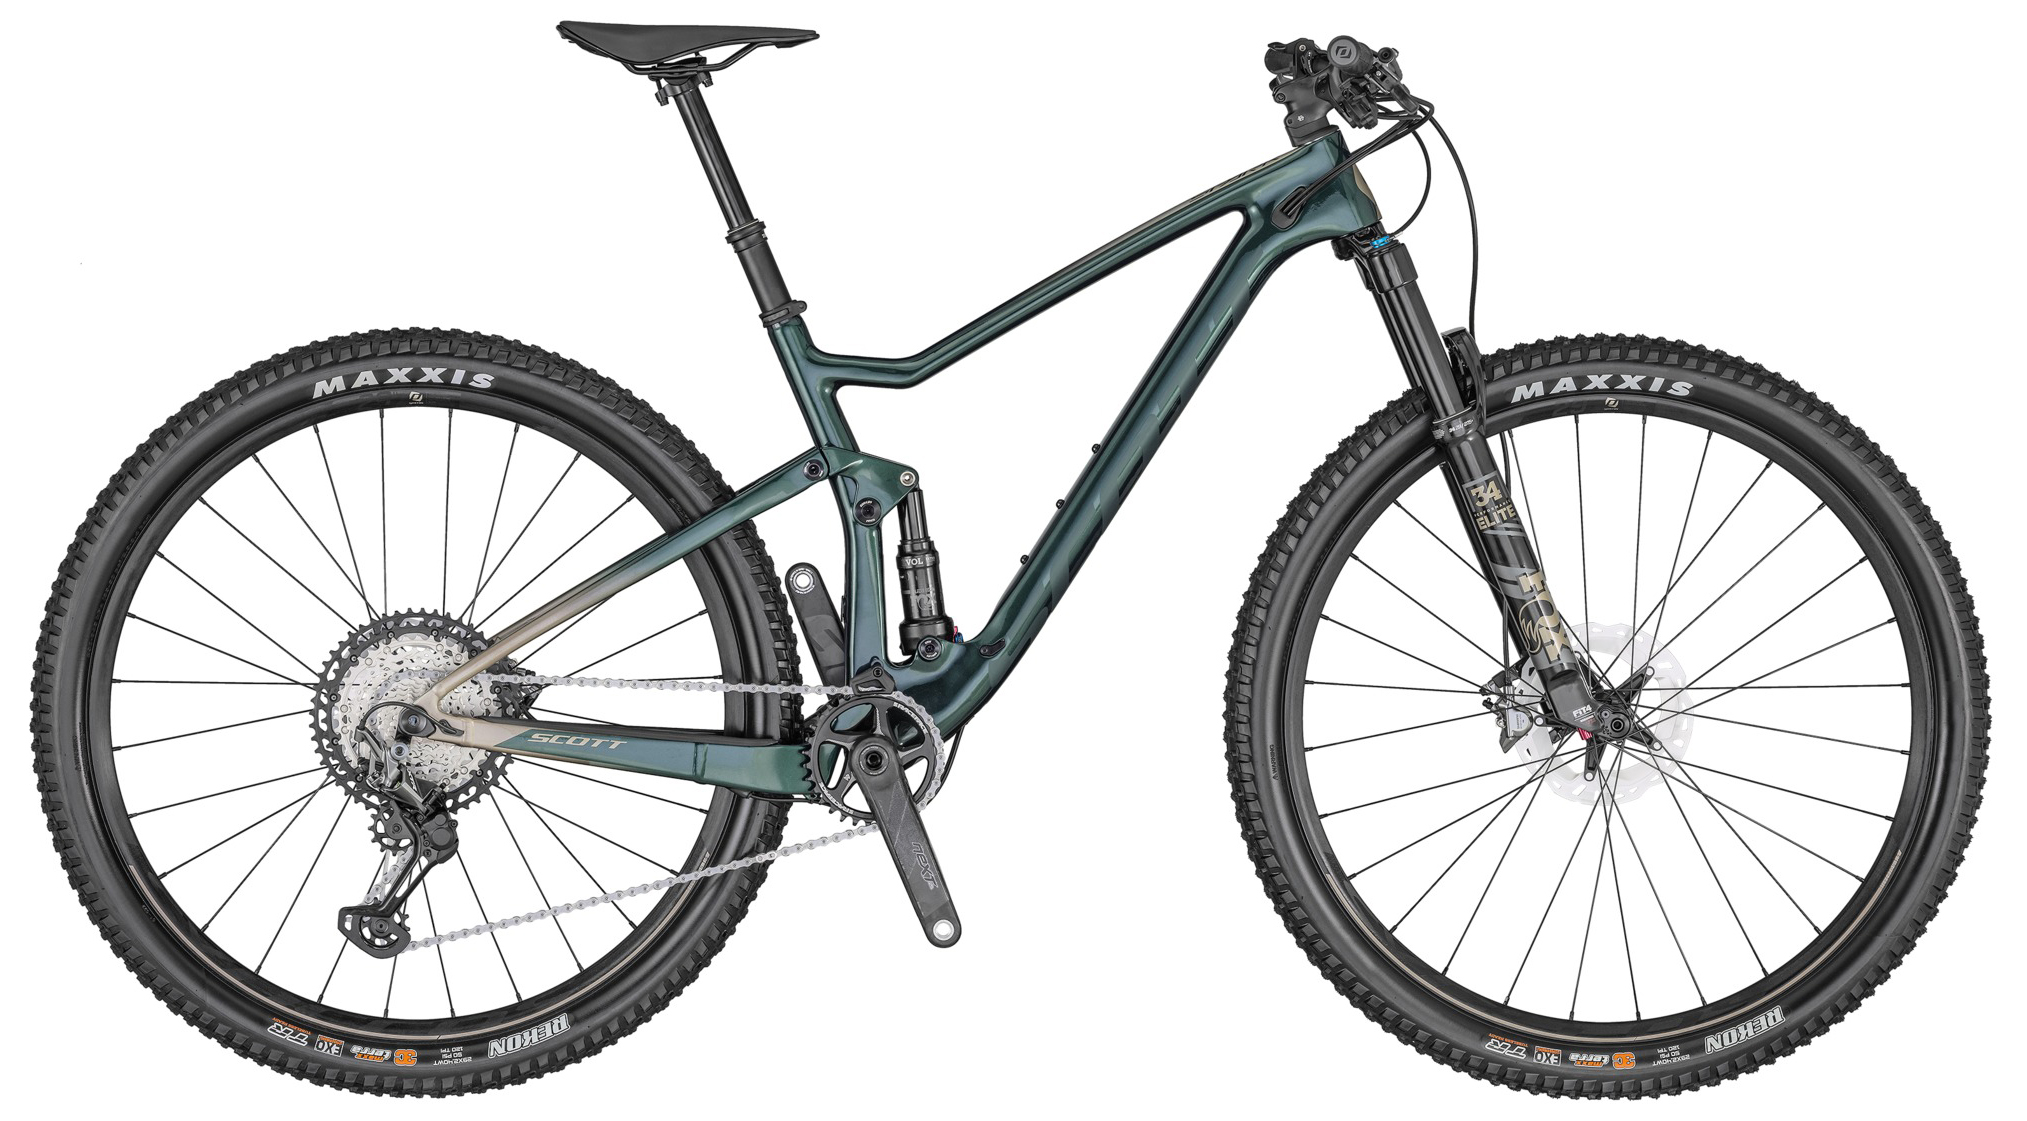  Отзывы о Двухподвесном велосипеде Scott Spark 900 2020